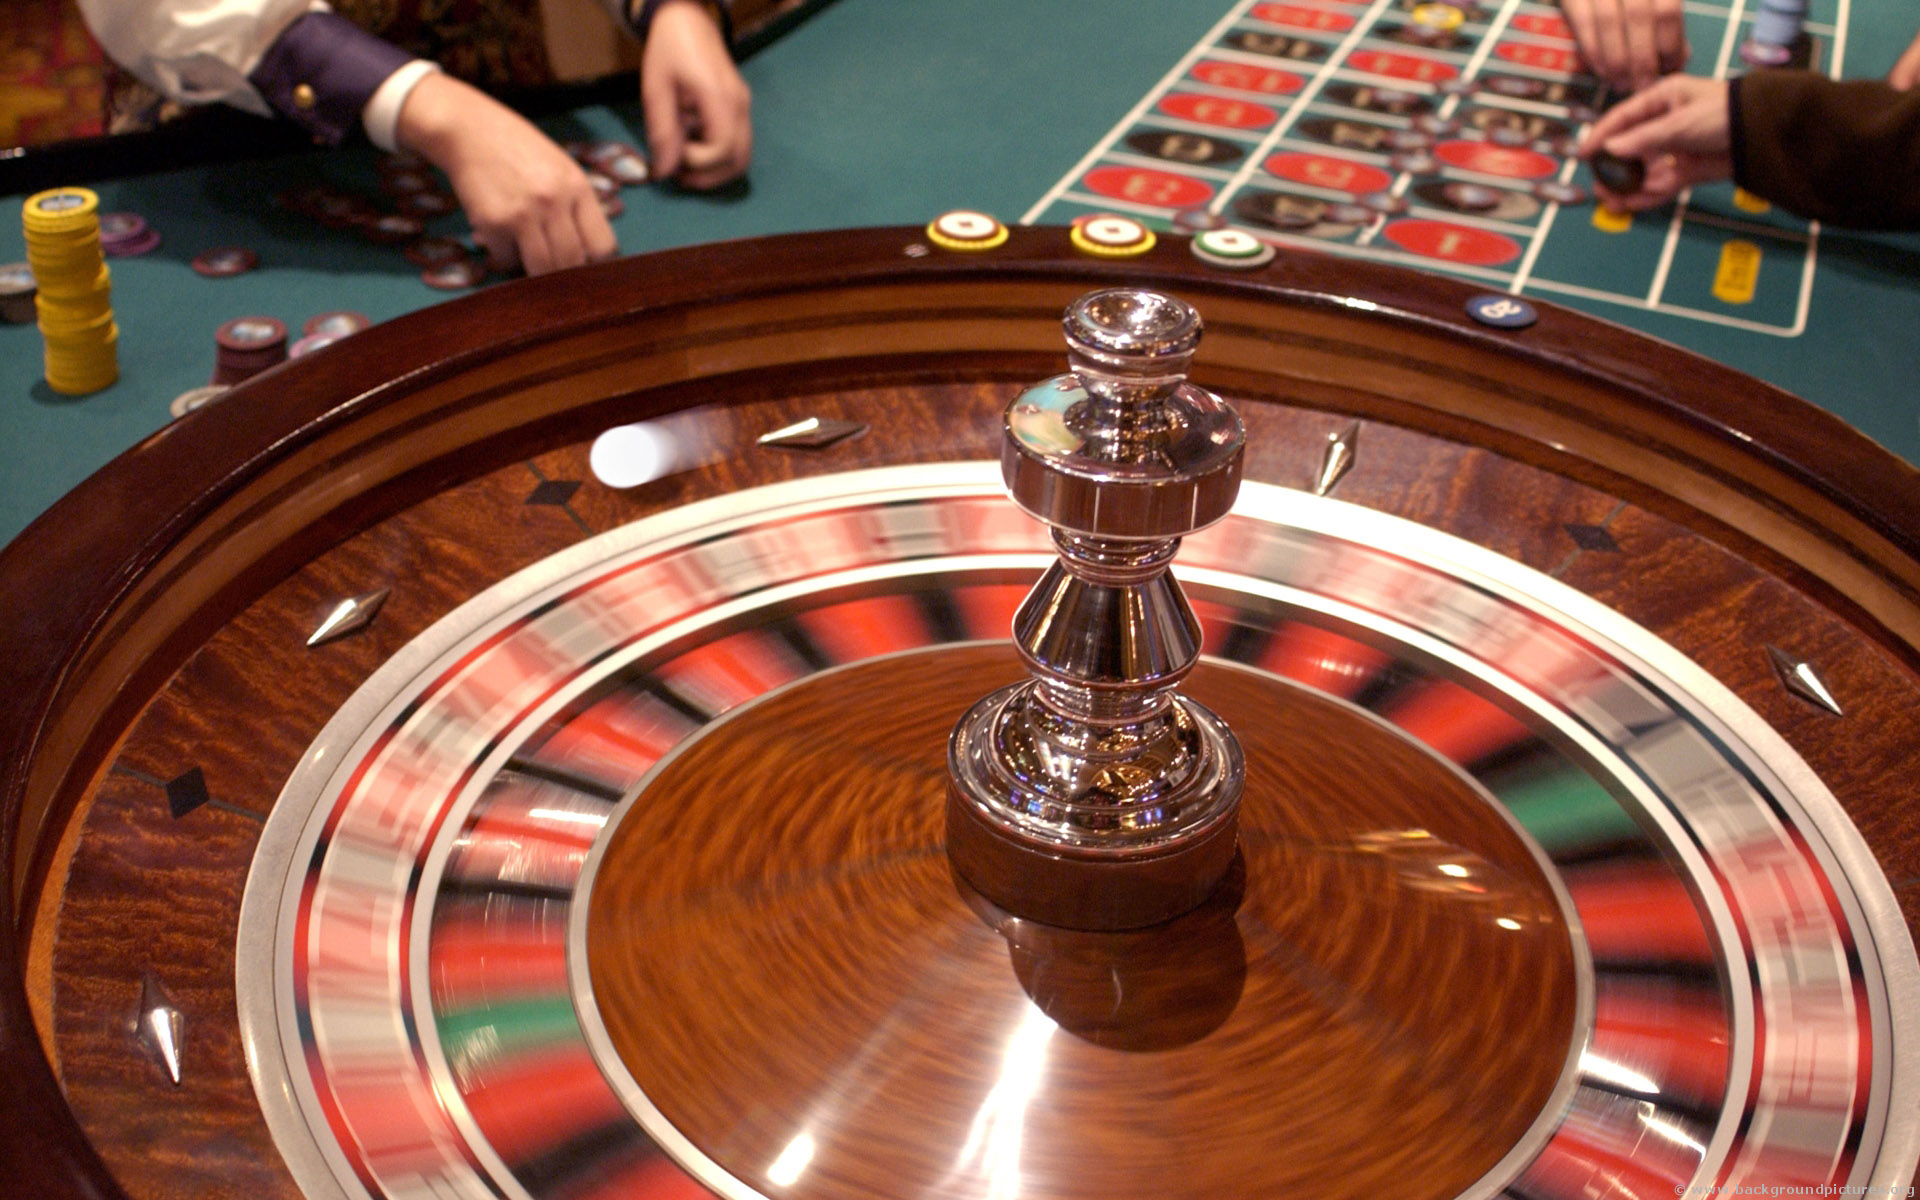 Έφθασε η ώρα για το καζίνο: Στην Ολομέλεια της Βουλής το νομοσχέδιο